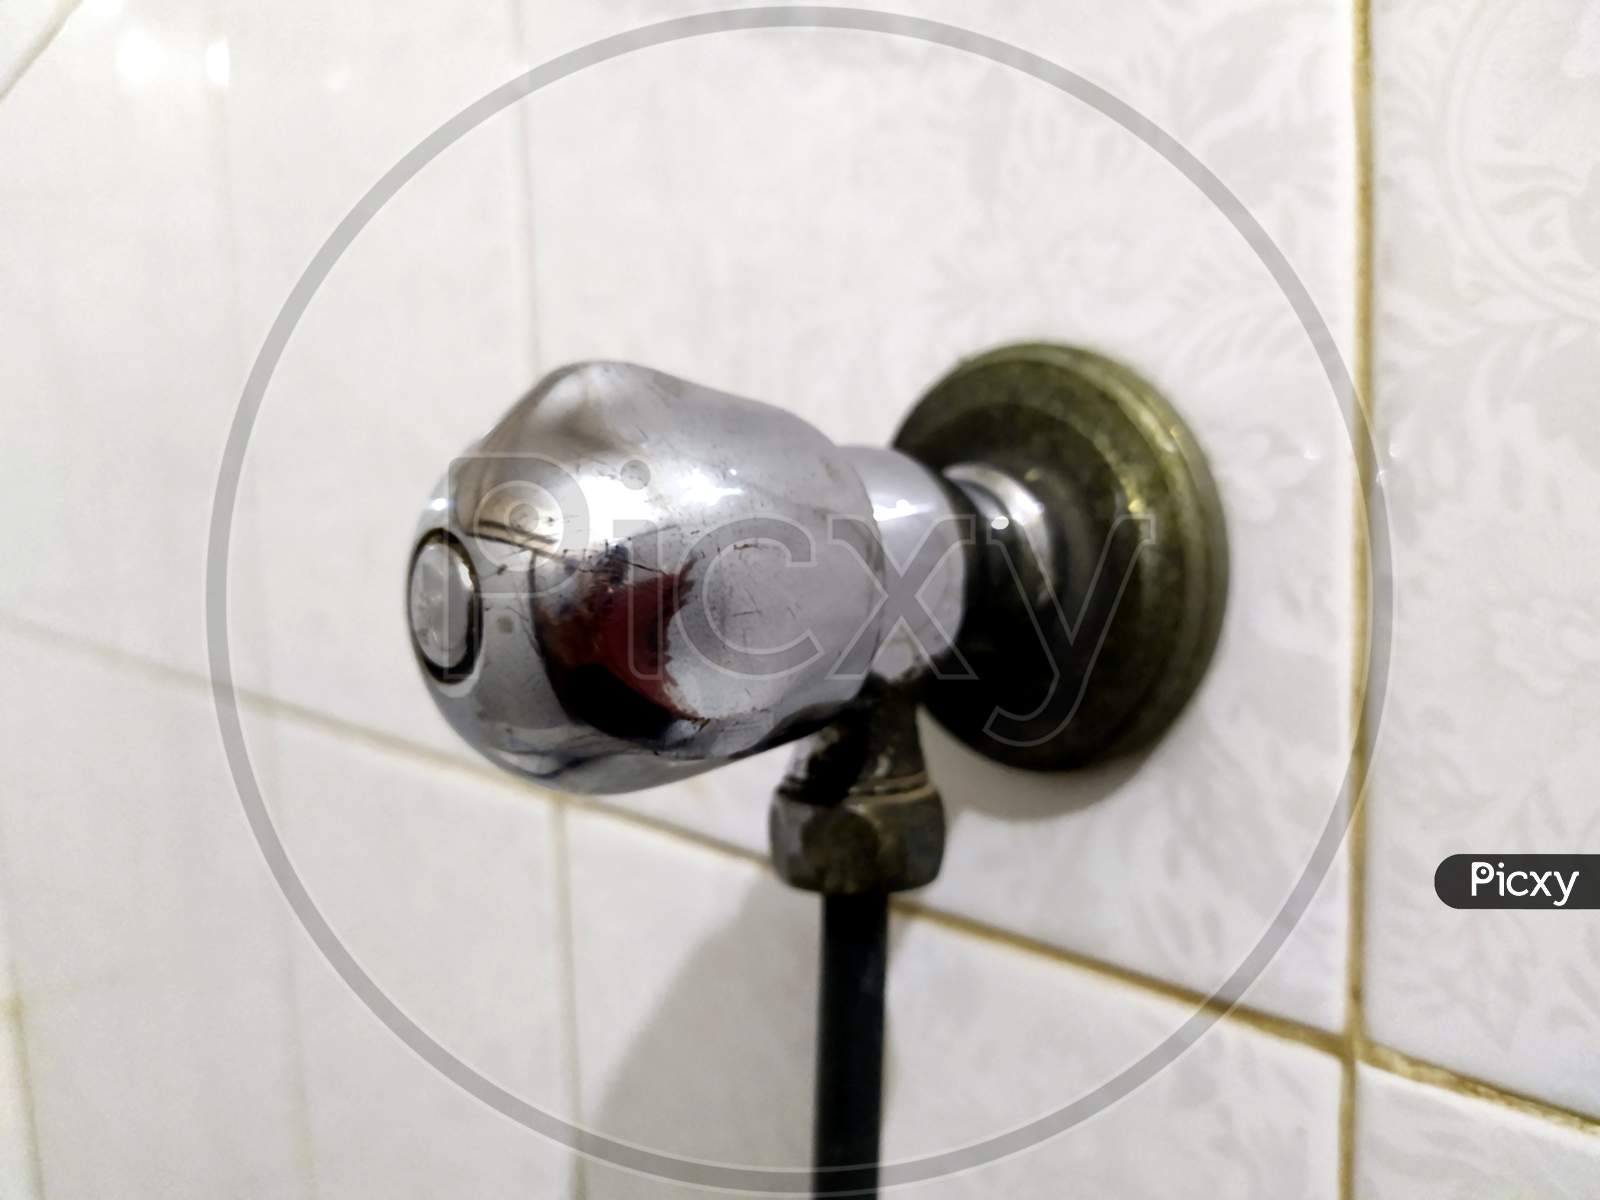 steel tap in bathroom wall